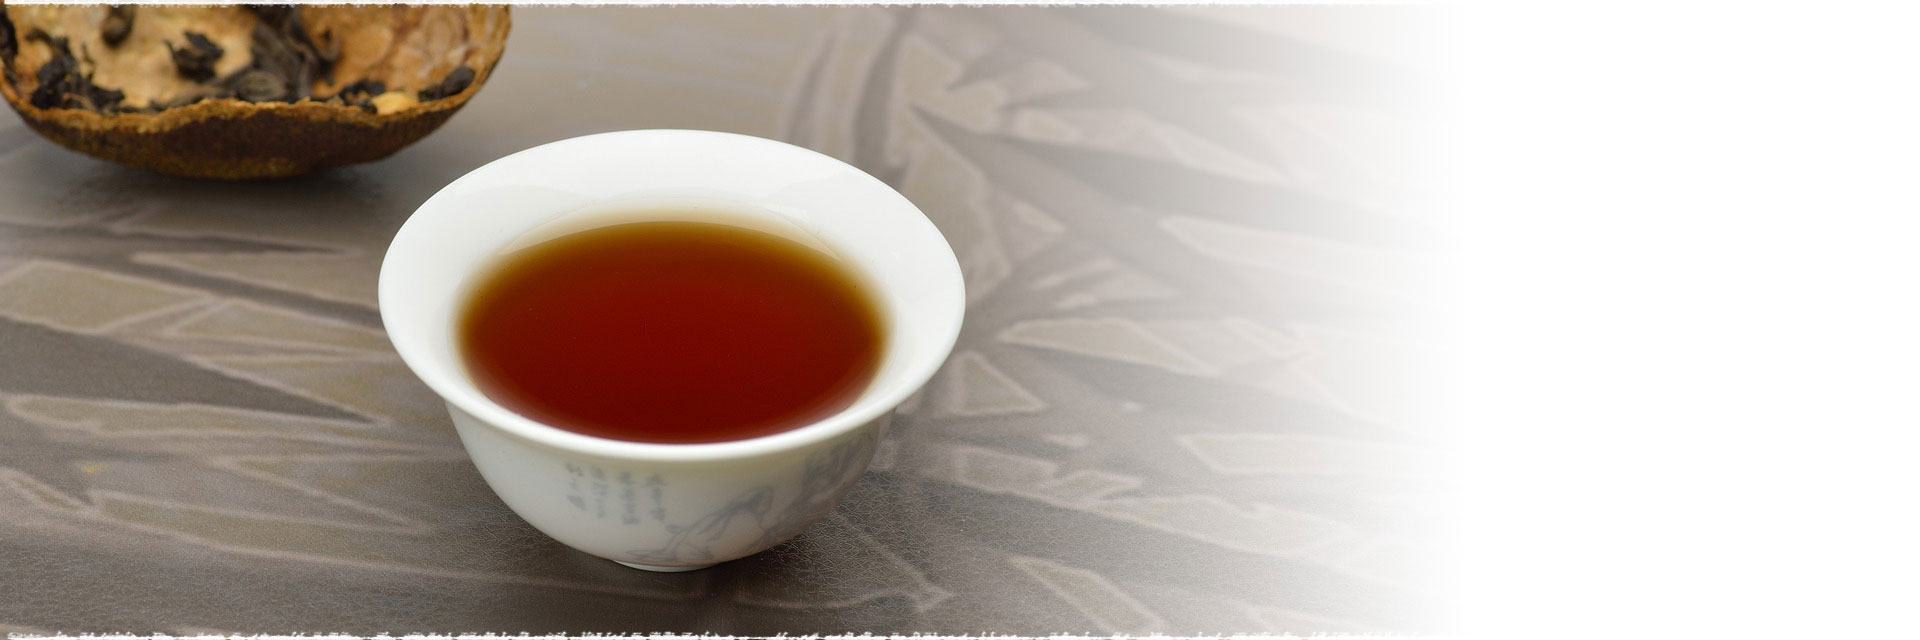 Tangerine Puerh tea, a Long-distance relationship